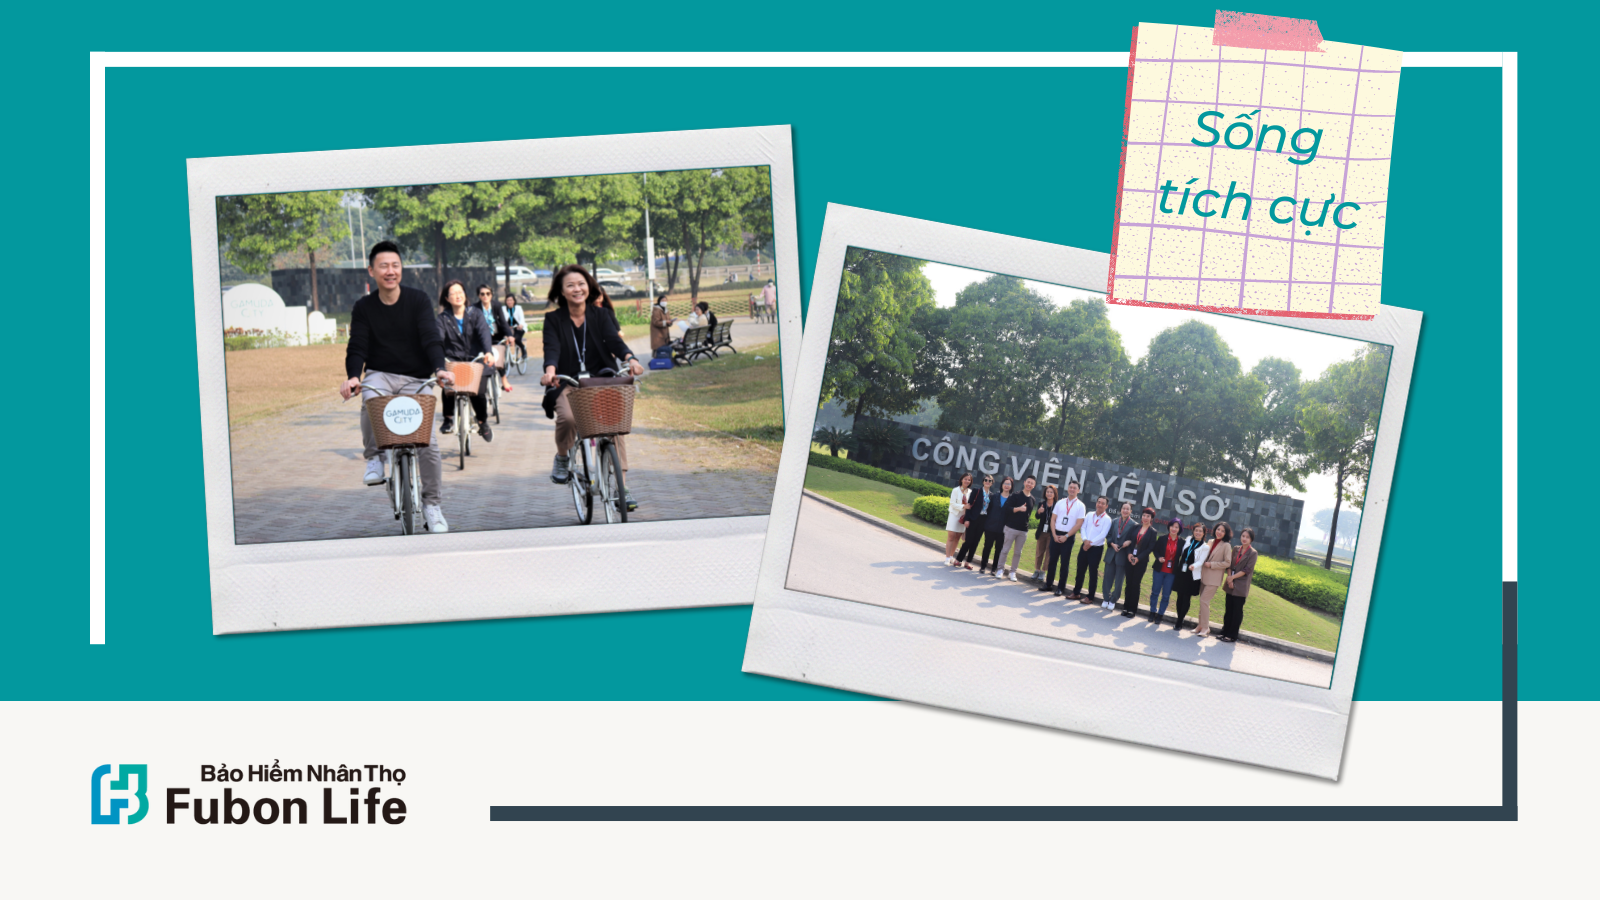 Fubon Life Việt Nam trao tặng 50 chiếc ghế cho công viên Yên Sở